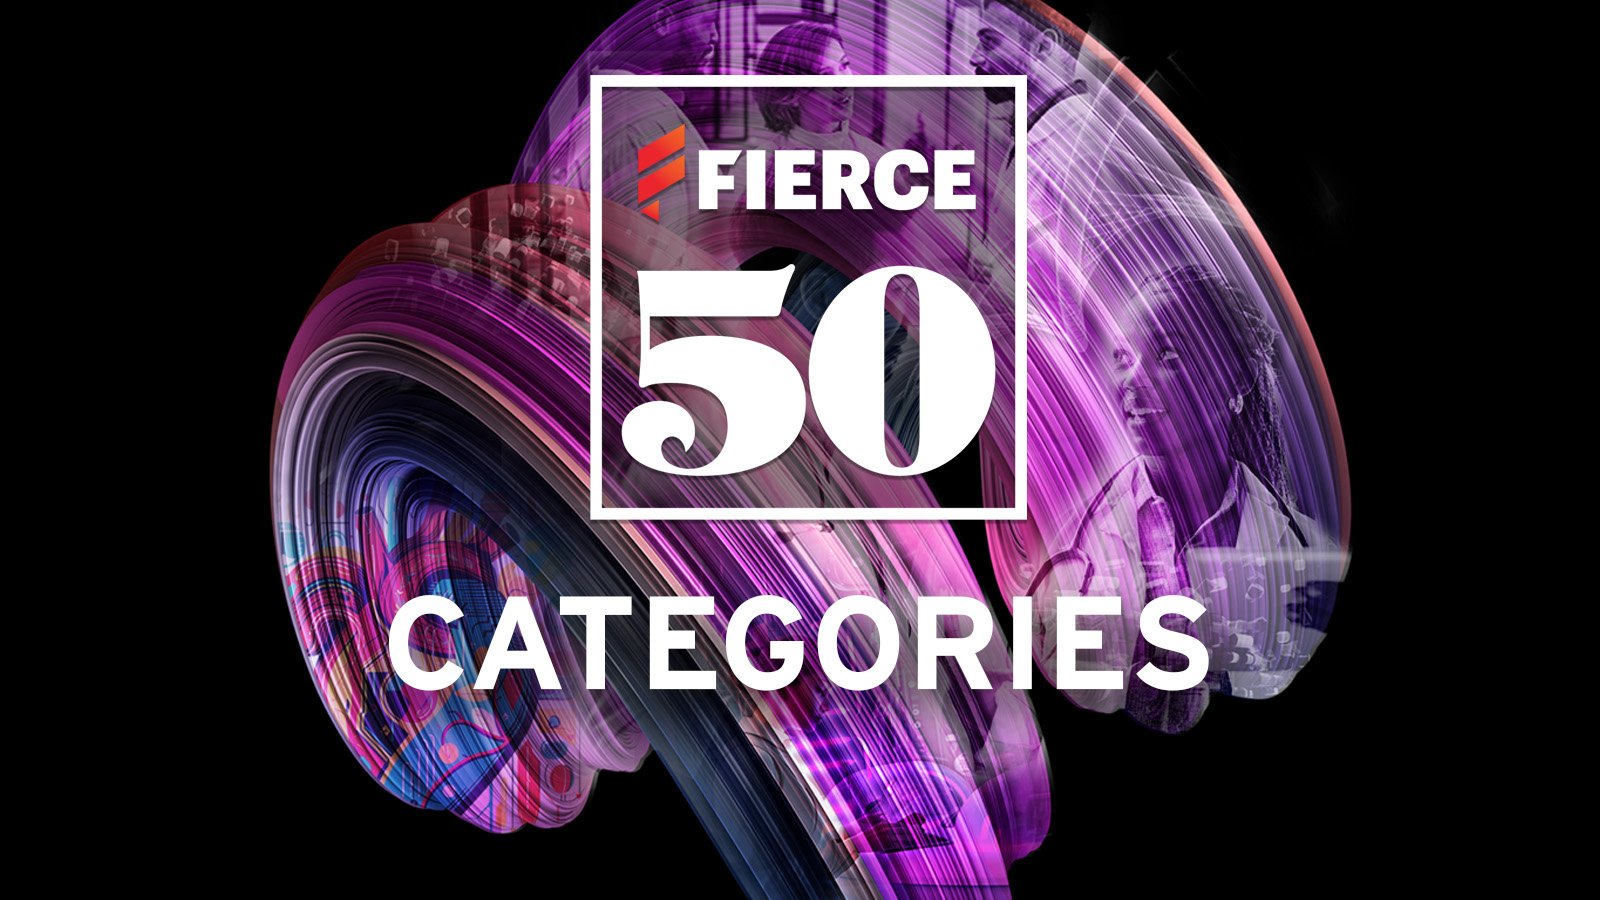 Fierce 50 Categories 